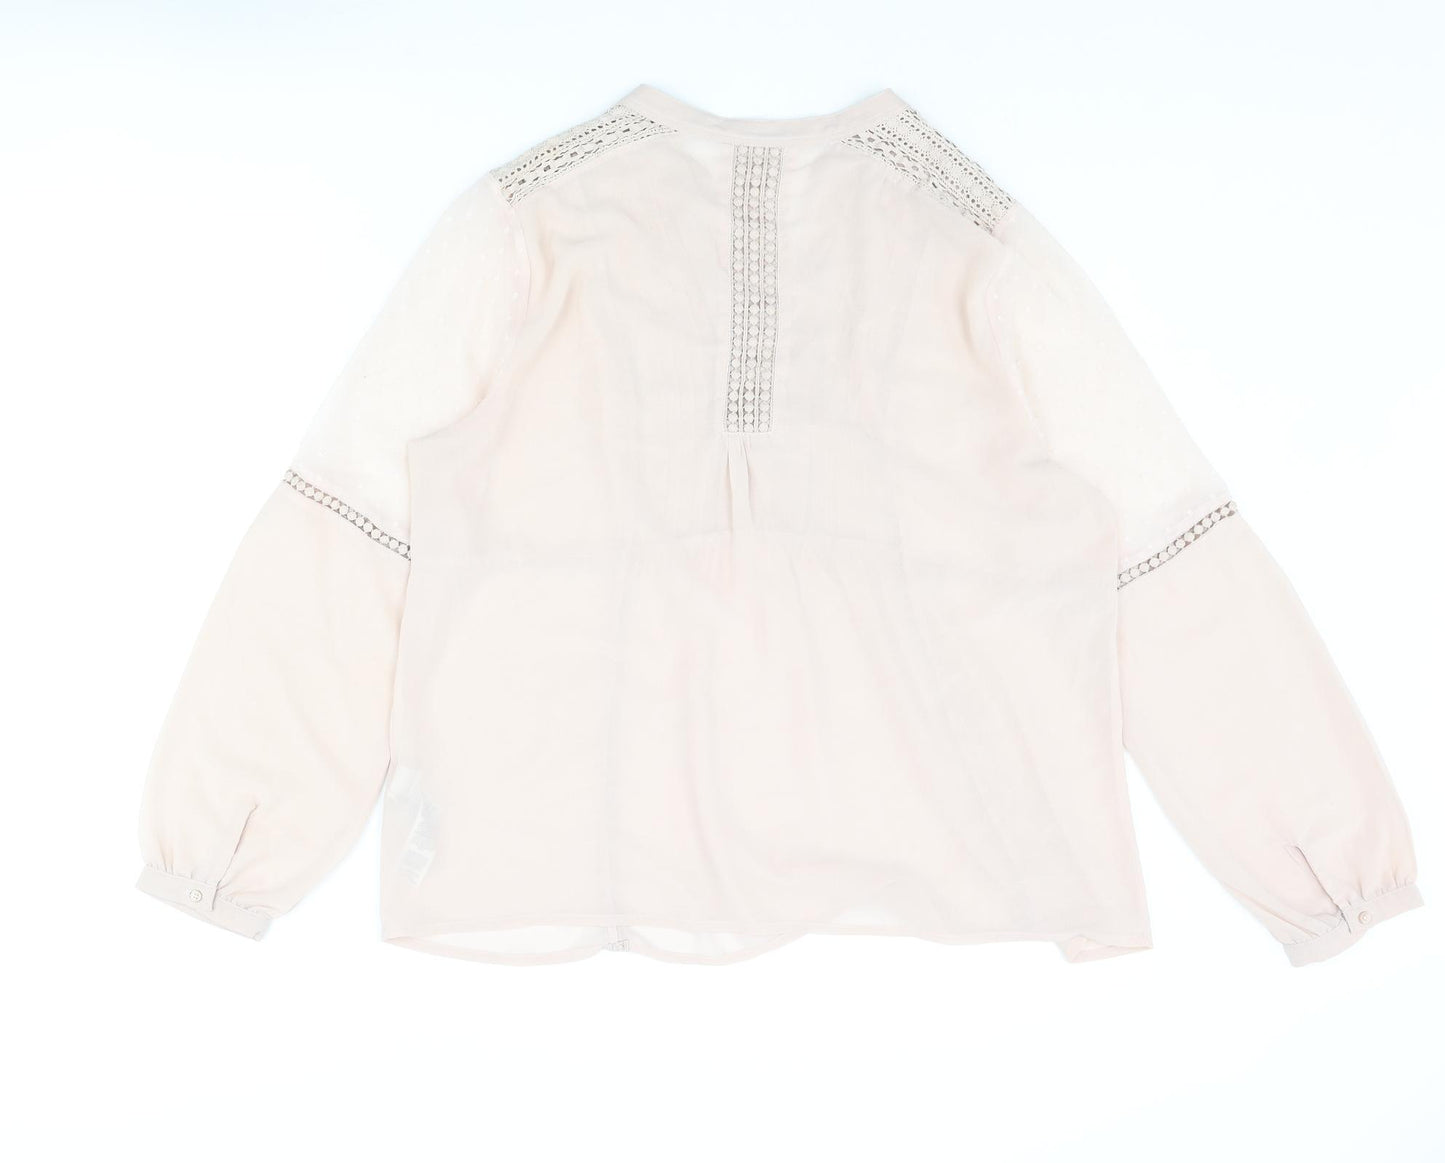 Indigo Womens Pink Polyester Basic Blouse Size 16 V-Neck - Lace Trim